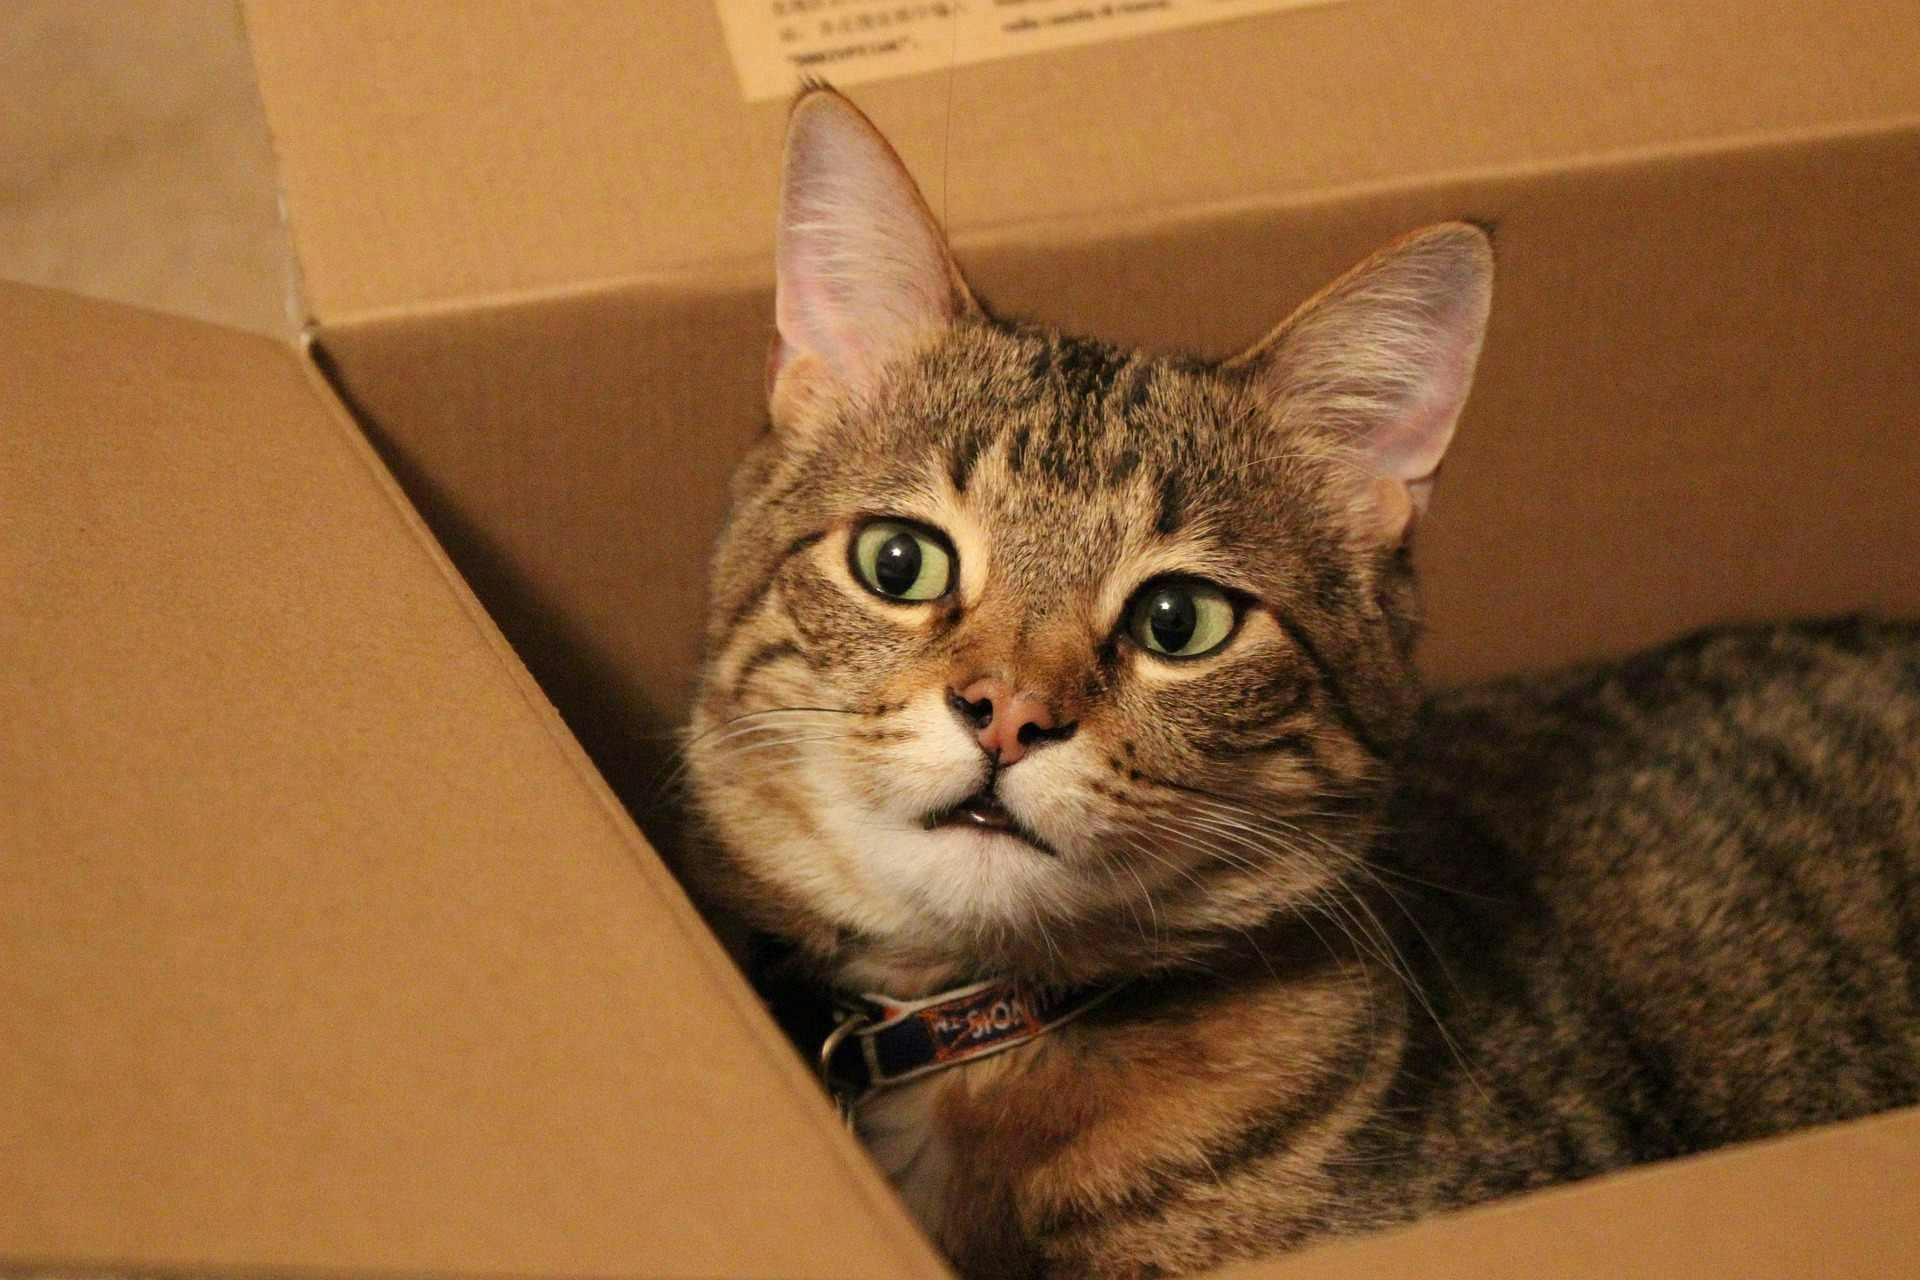 Cat cardboard box cat toy - picture of cat in cardboard box. 